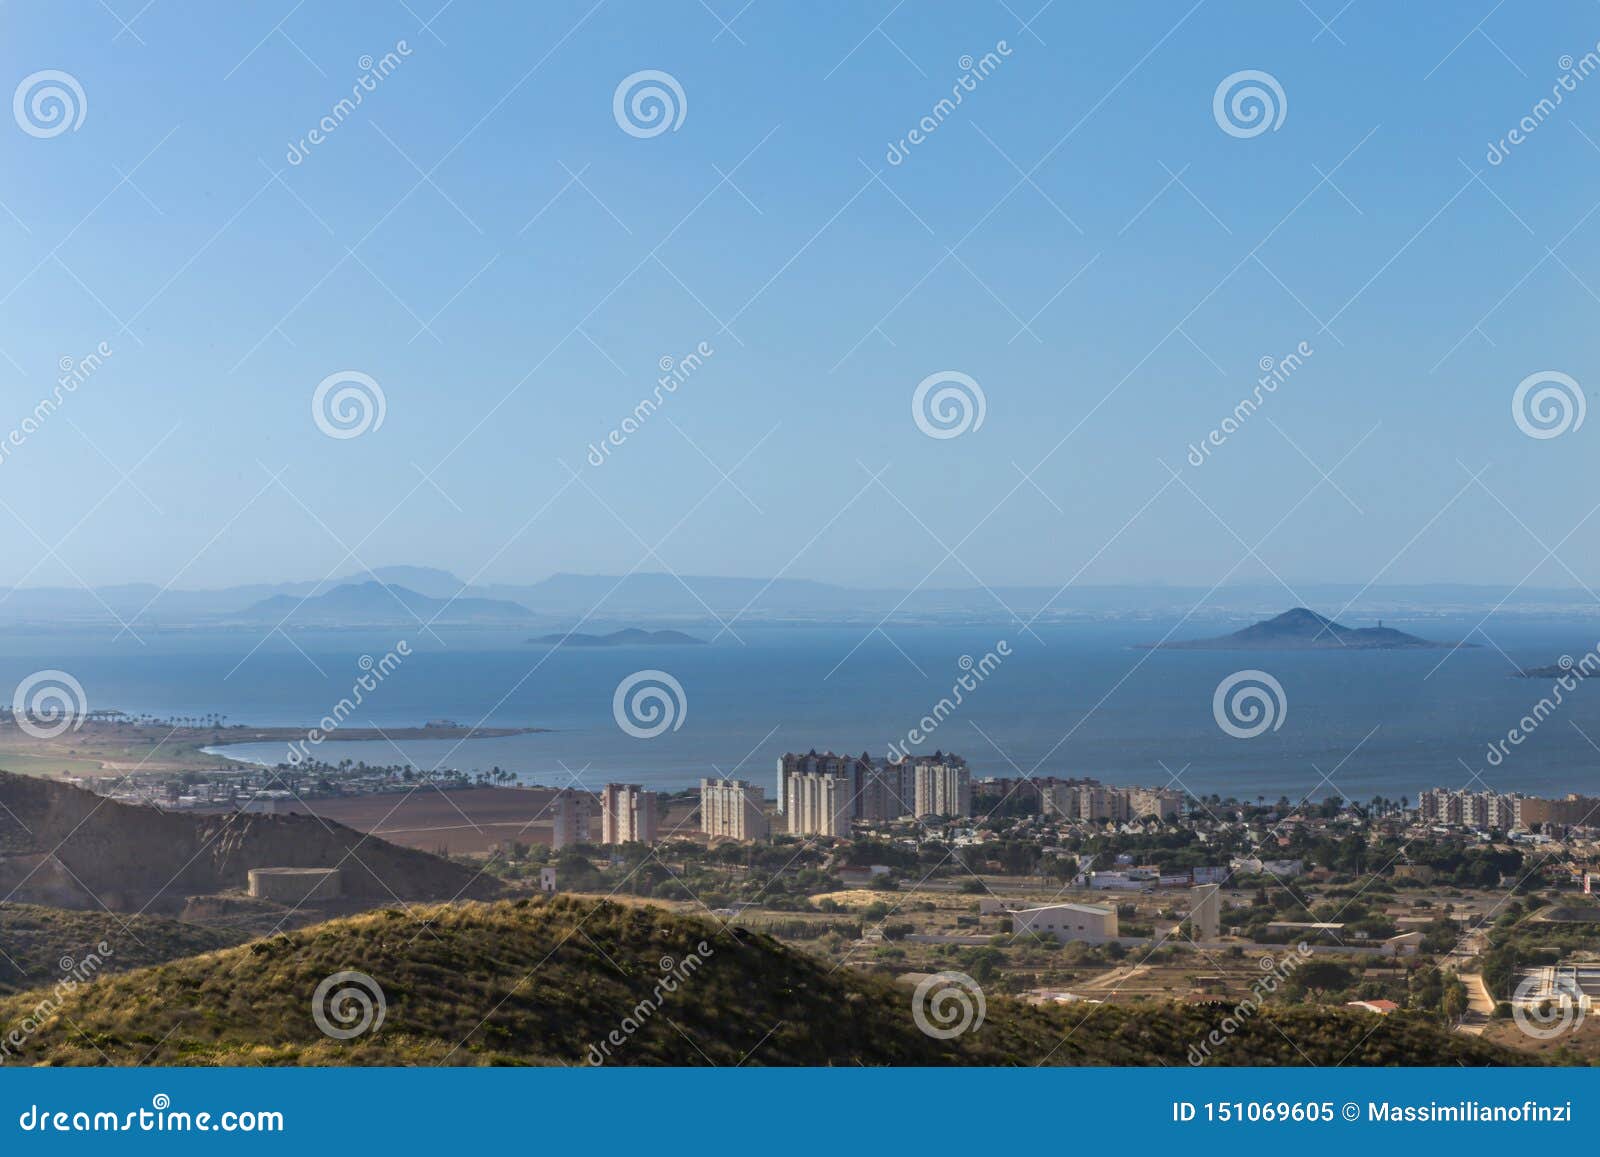 panoramic view of cabo de palos